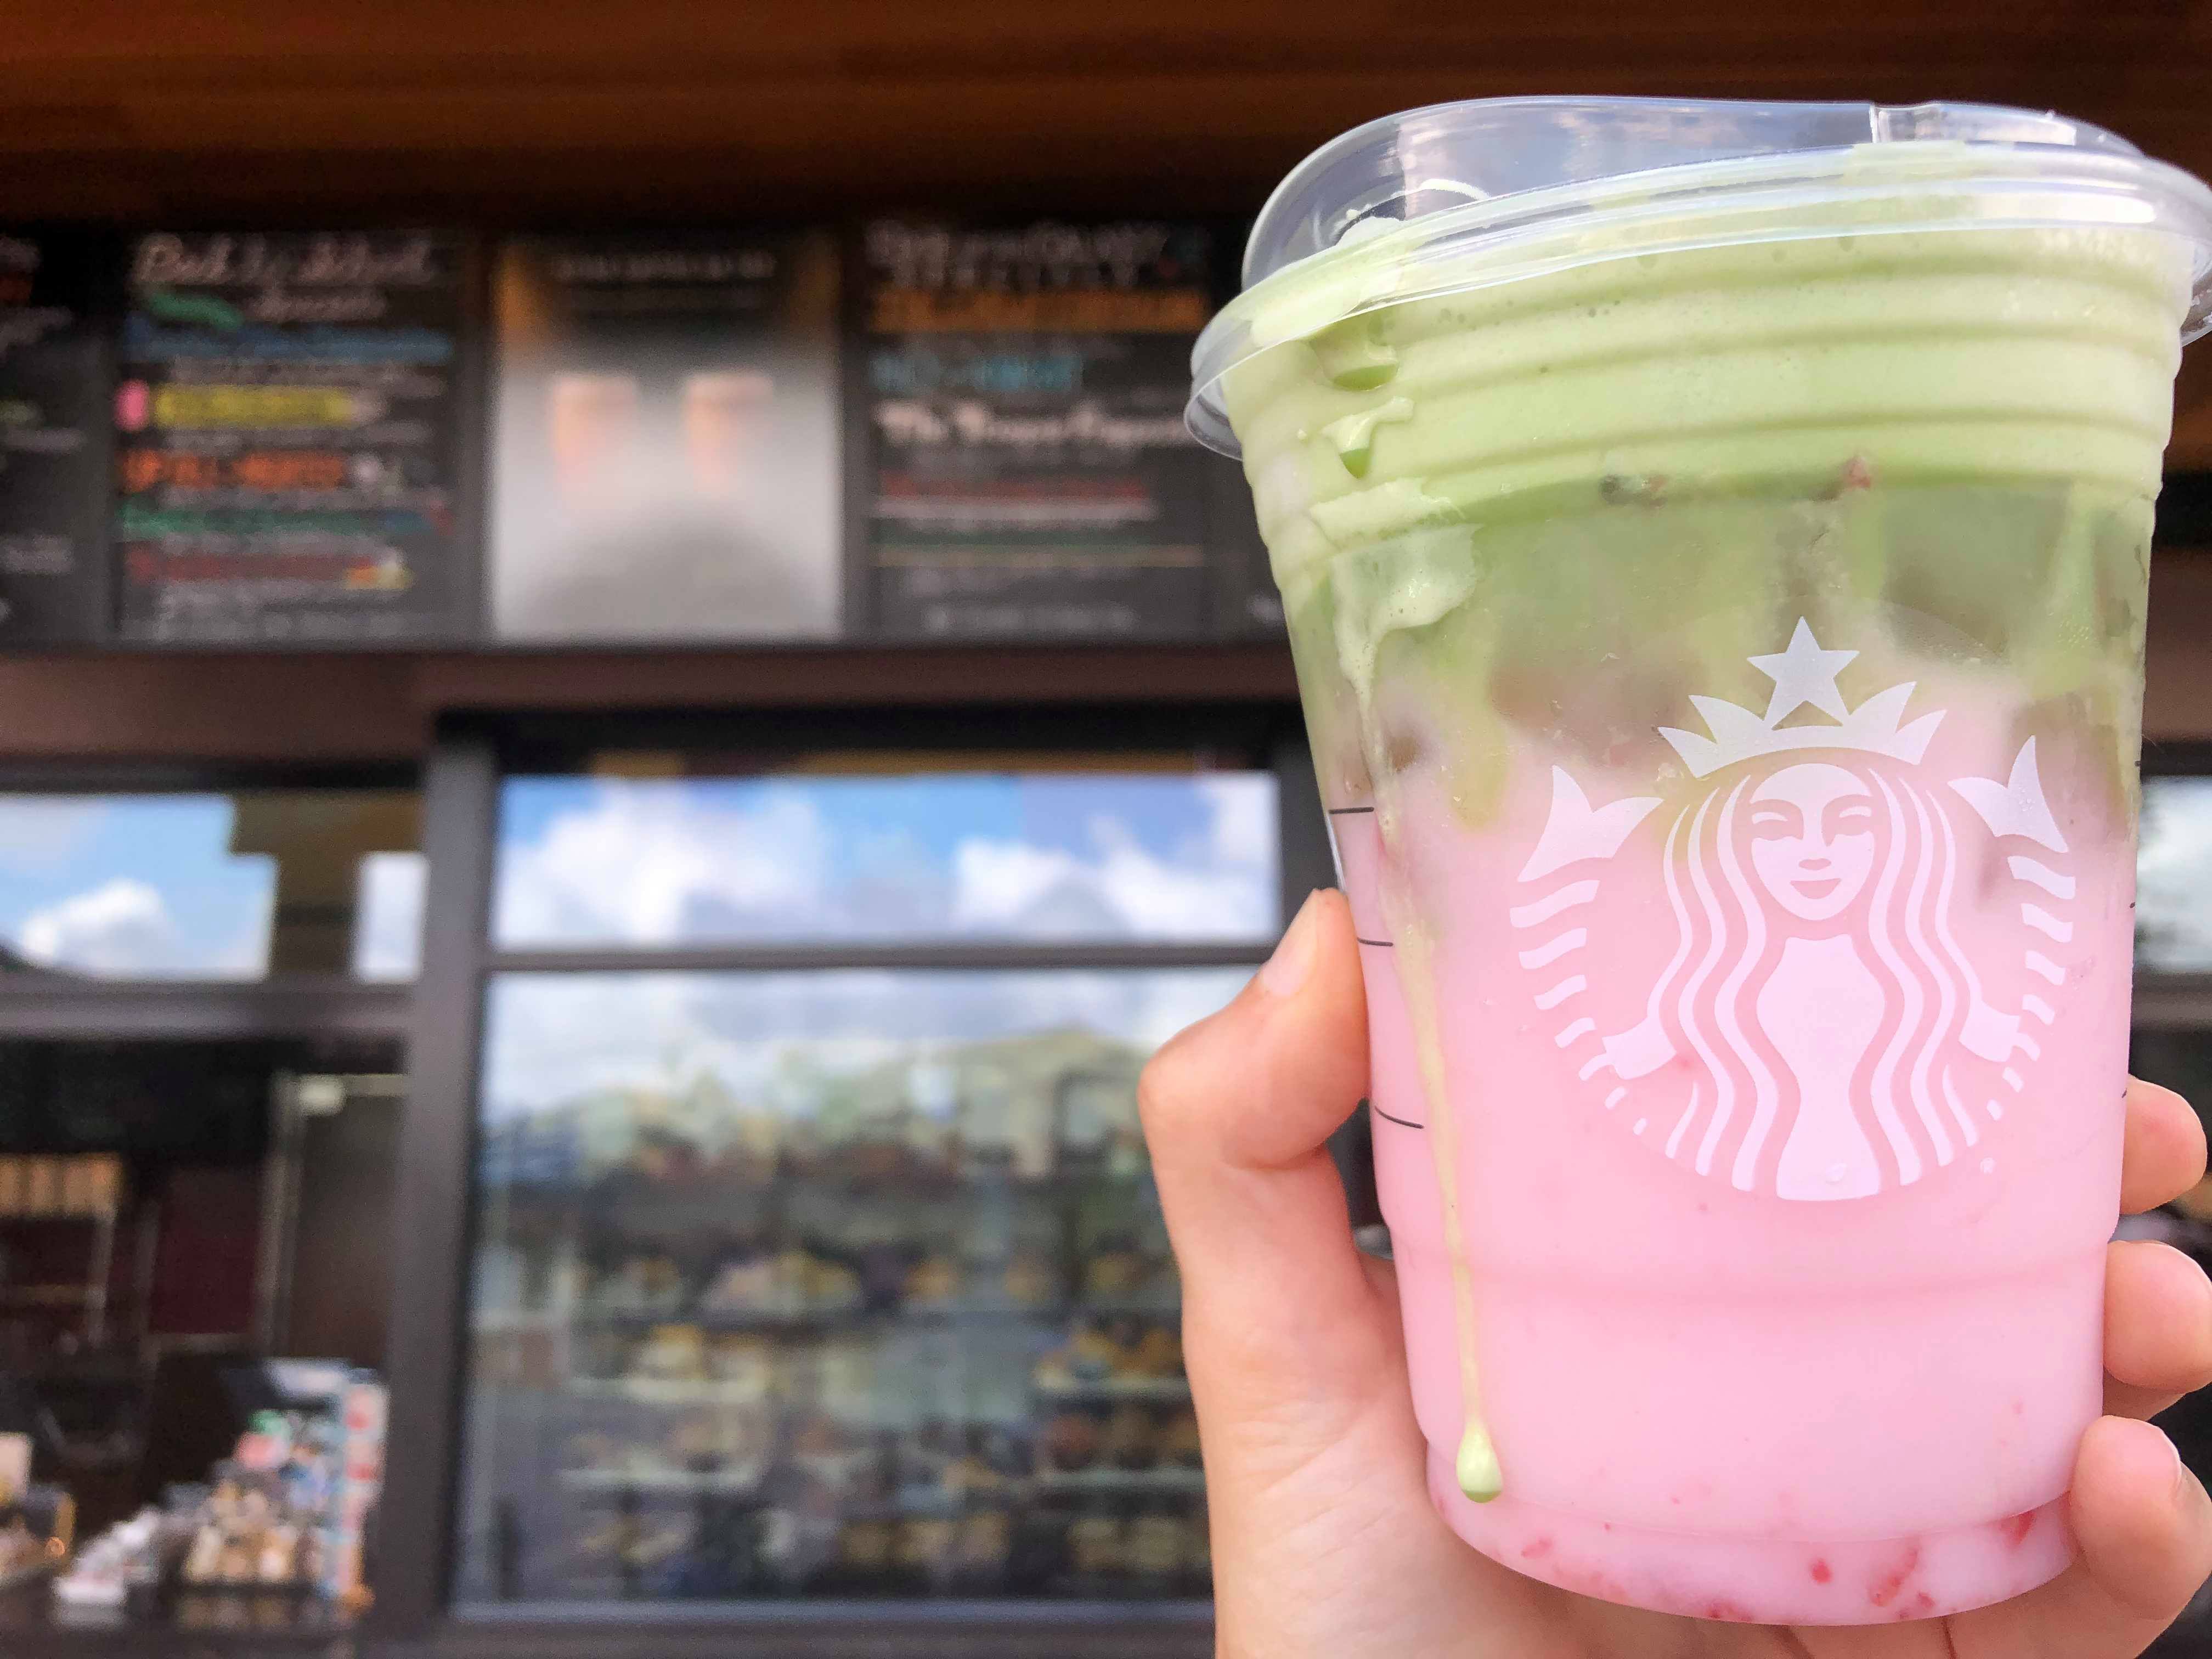 Star Wars Drinks “Jedi Mind Trick” Their Way into Disney Springs’ Starbucks